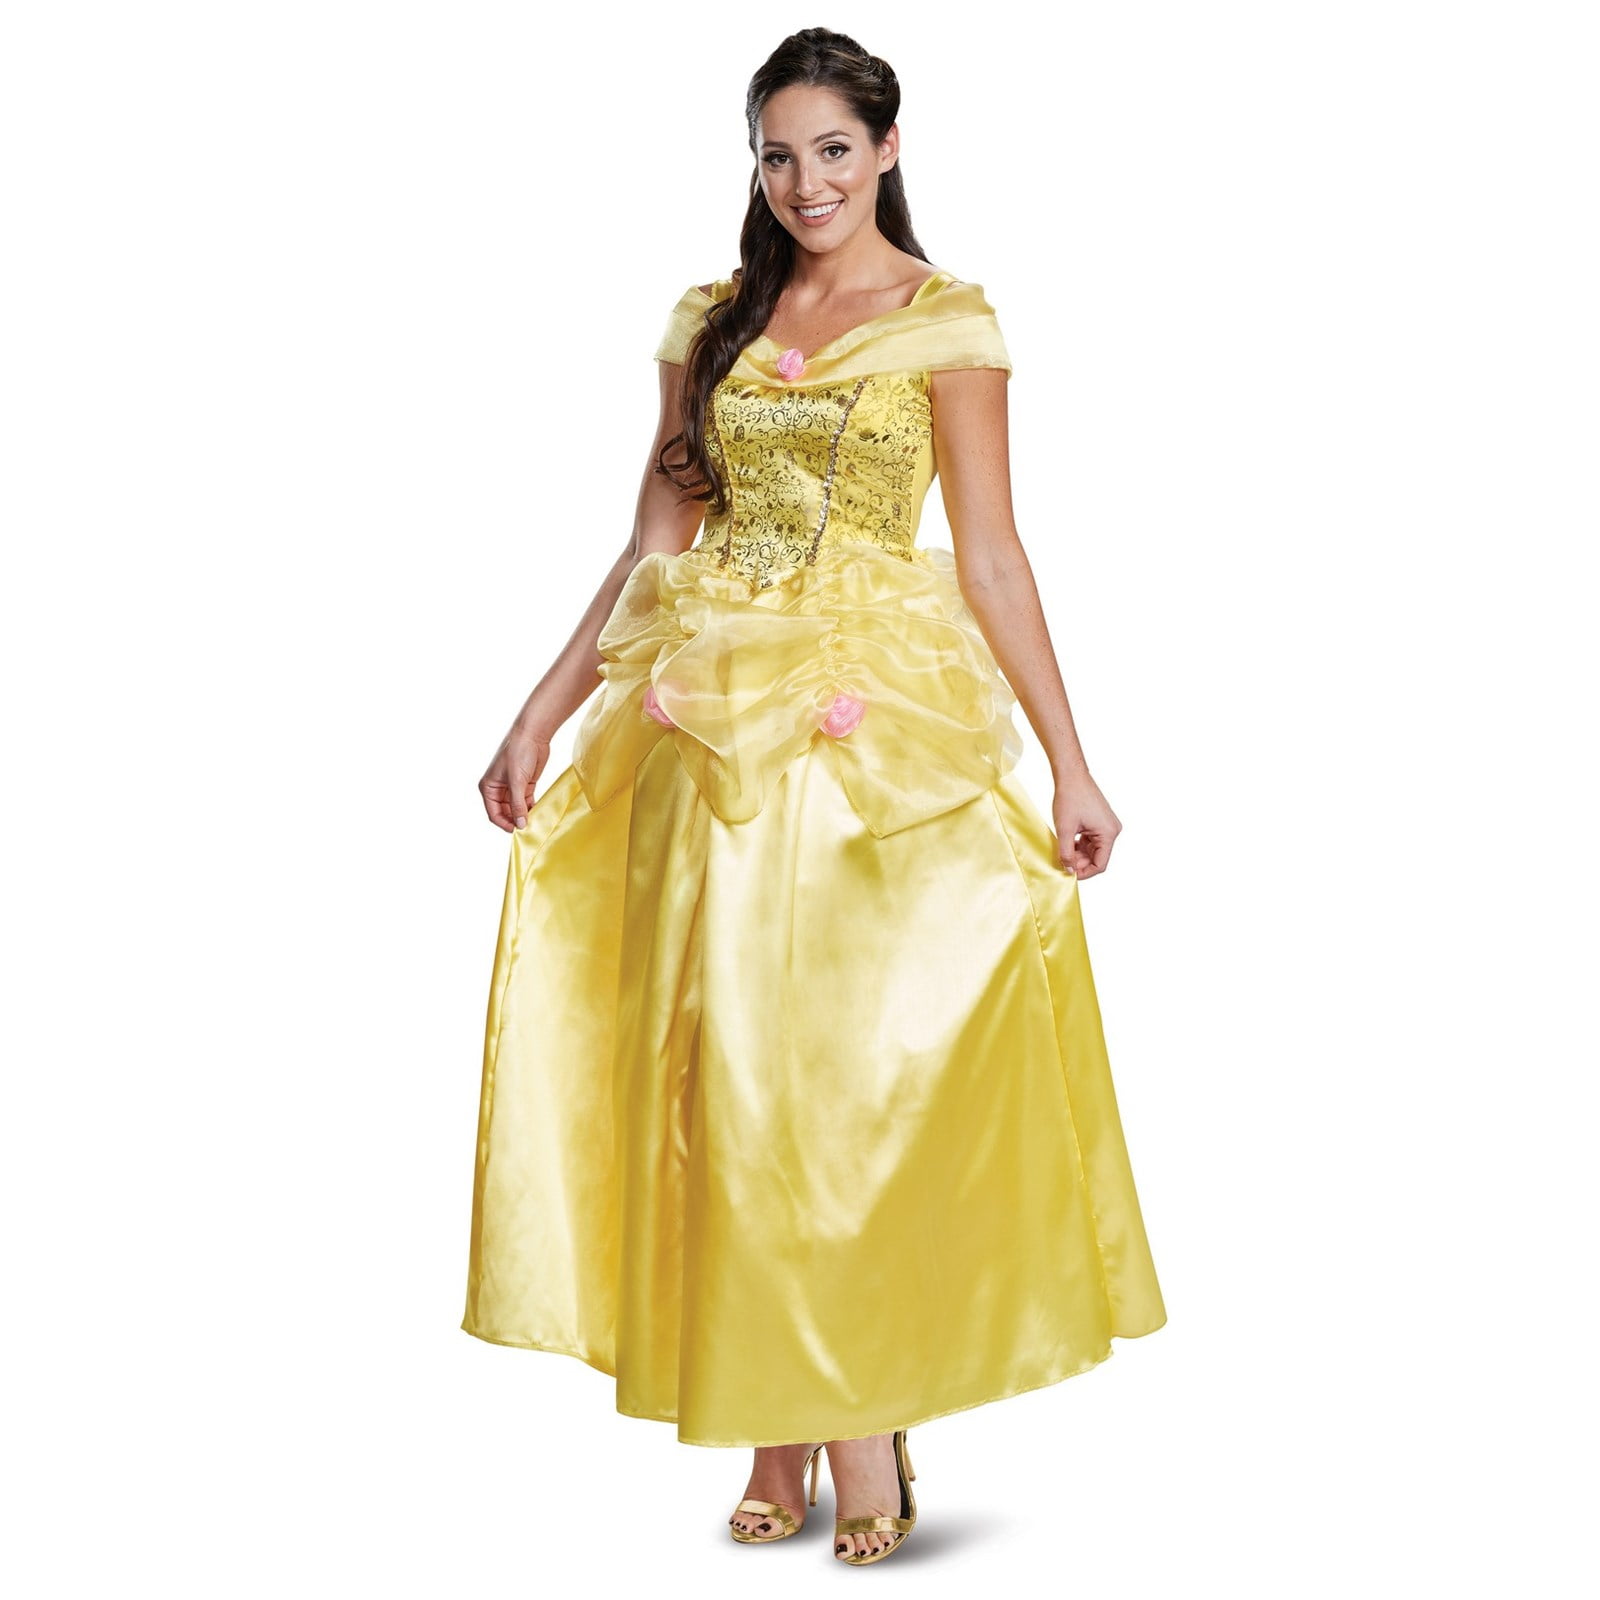 Señoras Princesa Disney Dormir Belleza Deluxe Fancy Dress Costume Adulto Libro WK 